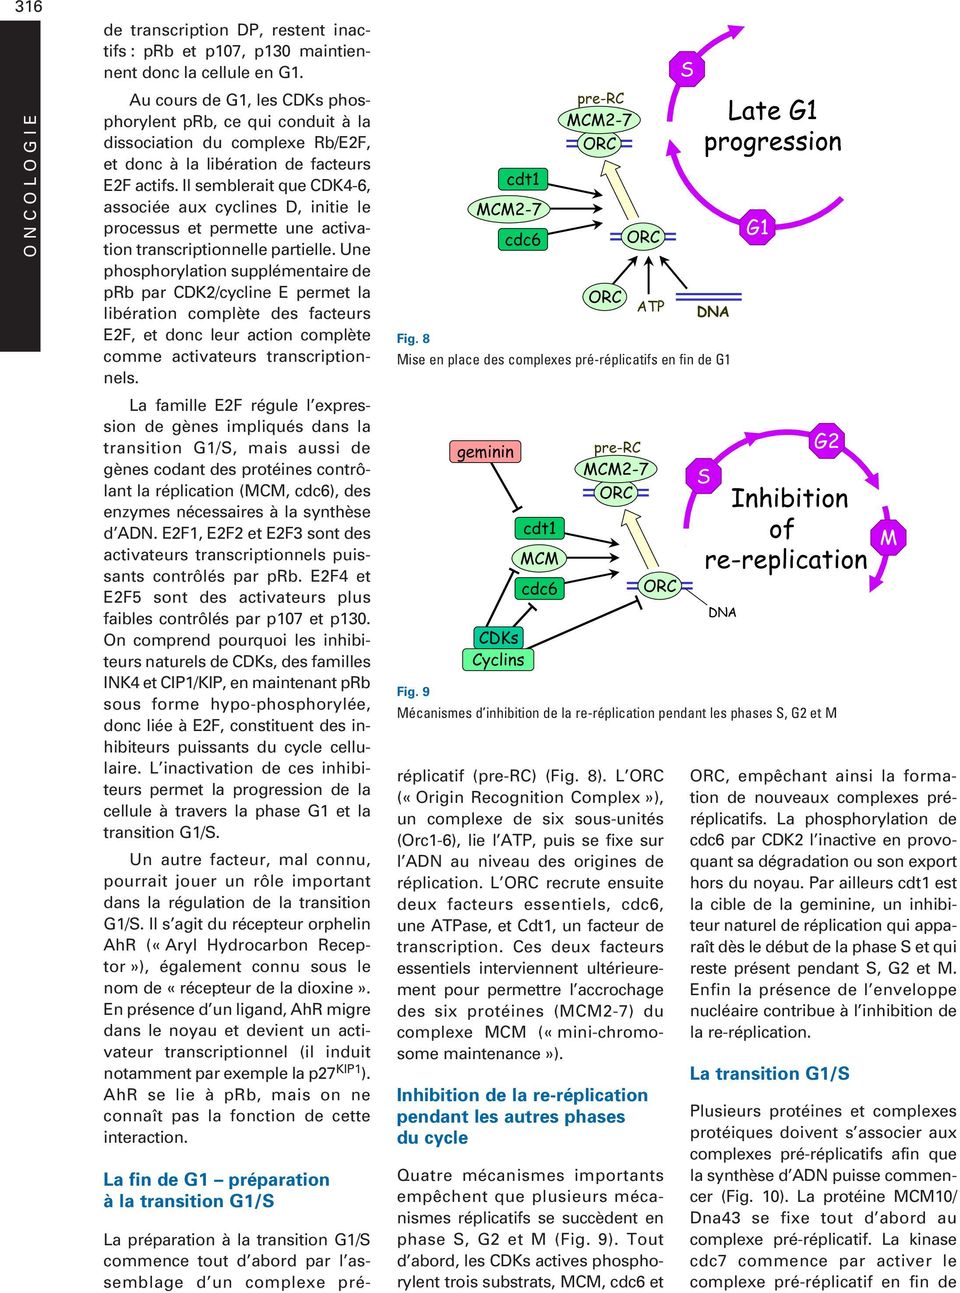 Il semblerait que CDK4-6, associée aux cyclines D, initie le processus et permette une activation transcriptionnelle partielle.